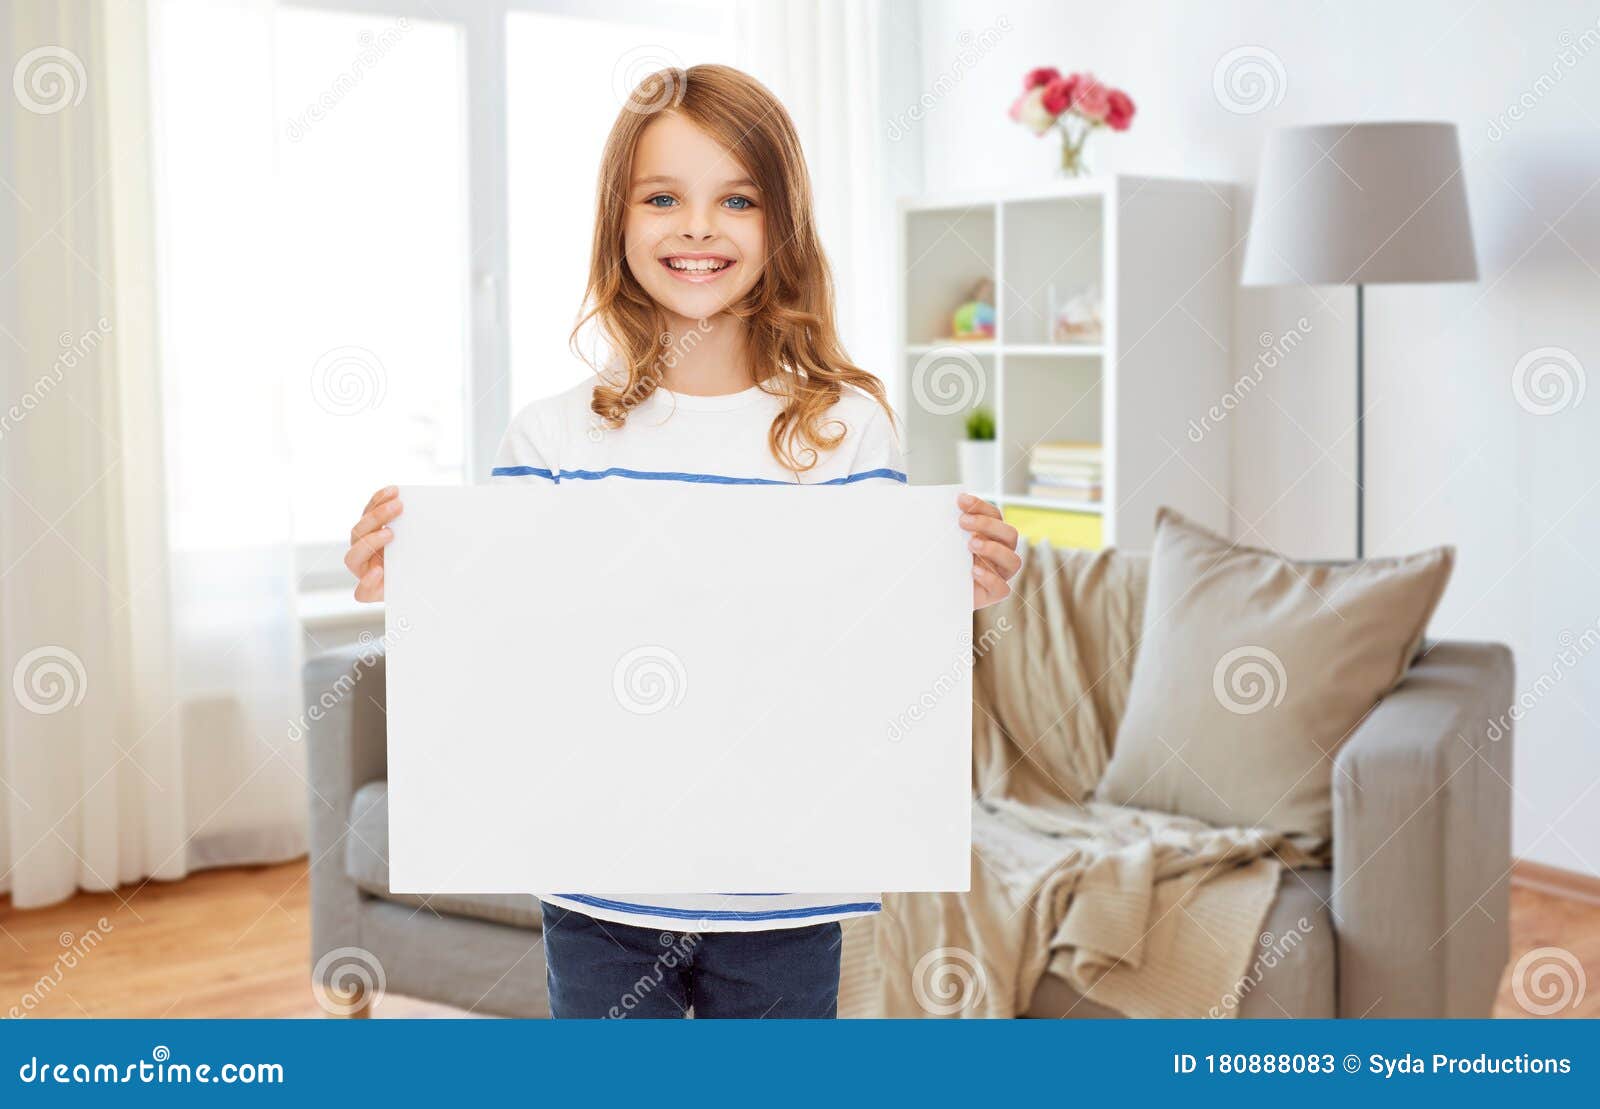 青少年的孩子男孩和女孩拿着白纸板料 库存照片. 图片 包括有 现代, 需求, 问题, 国家, 说明, 环境 - 78253758